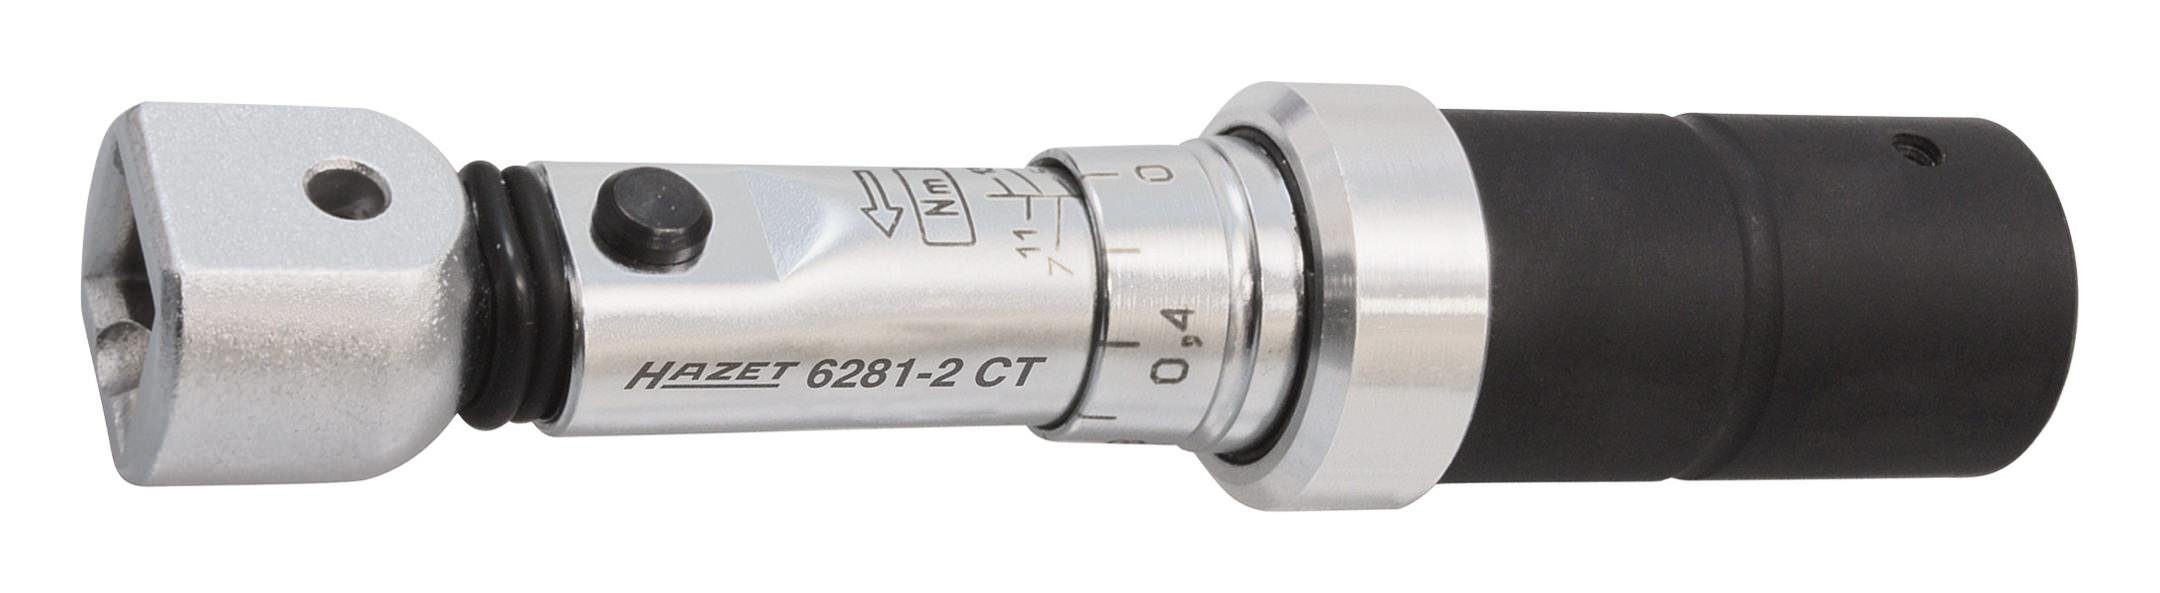 HAZET Drehmomentschlüssel, 6280-1CT 2 - 10 Nm 9 x 12 mm | Drehmomentschlüssel